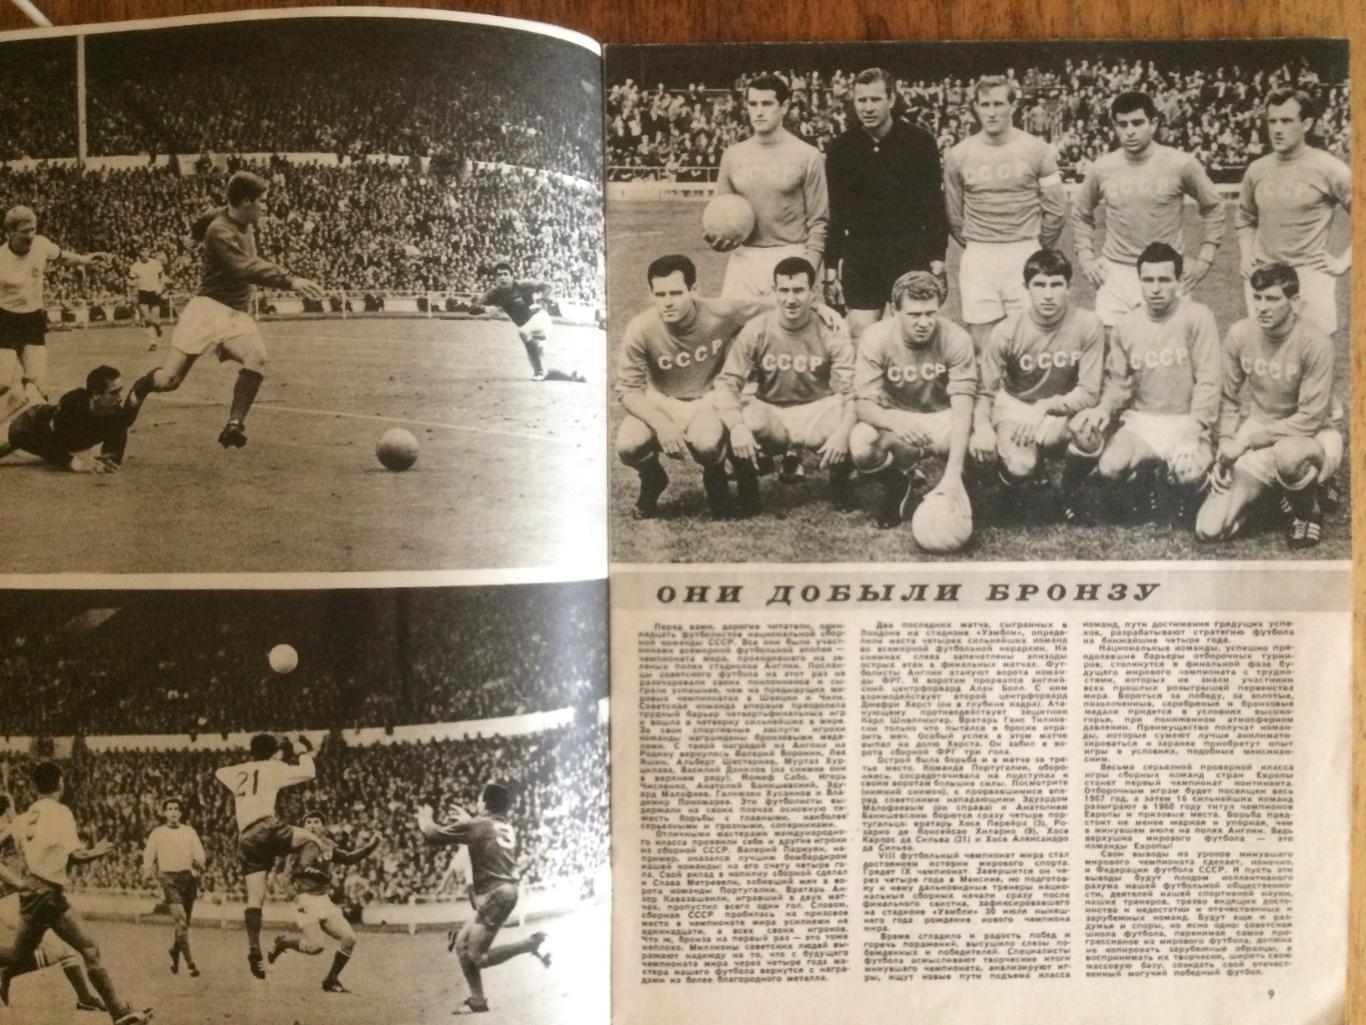 Журнал Спортивные игры №10 1966 1